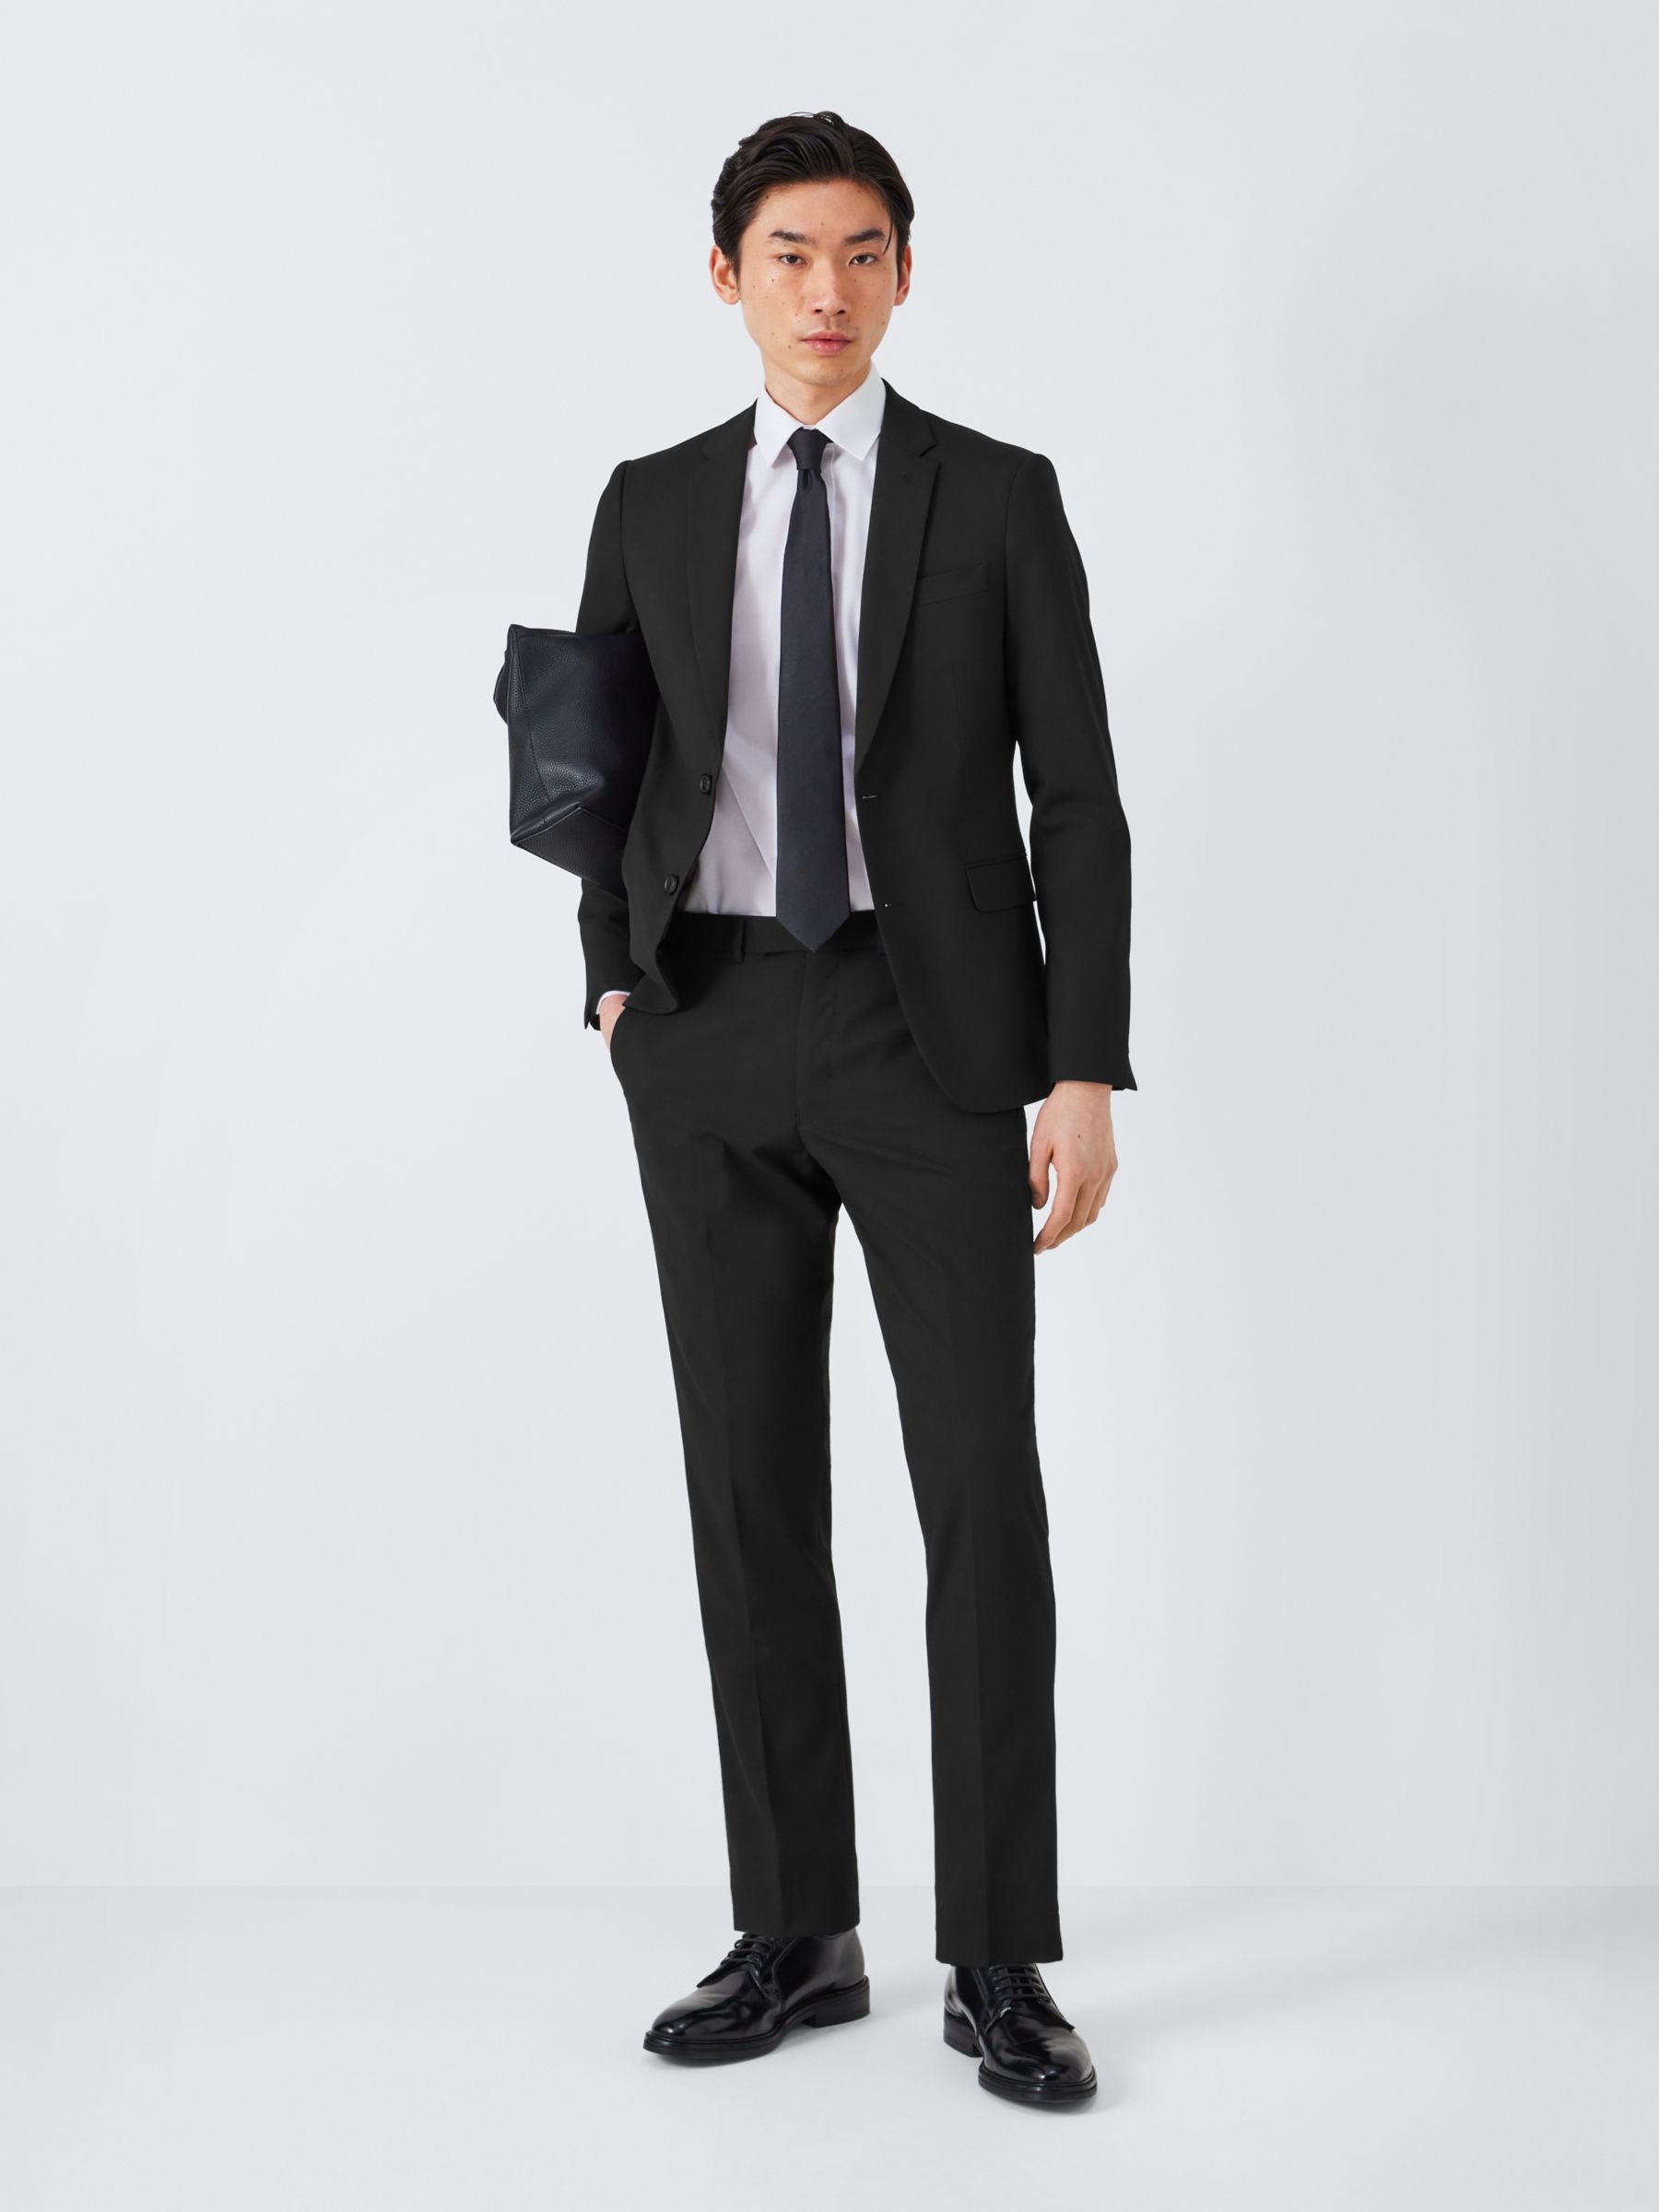 Slim Fit Black Suit- Coat & Pant Only - Tux & Suit rentals or sales